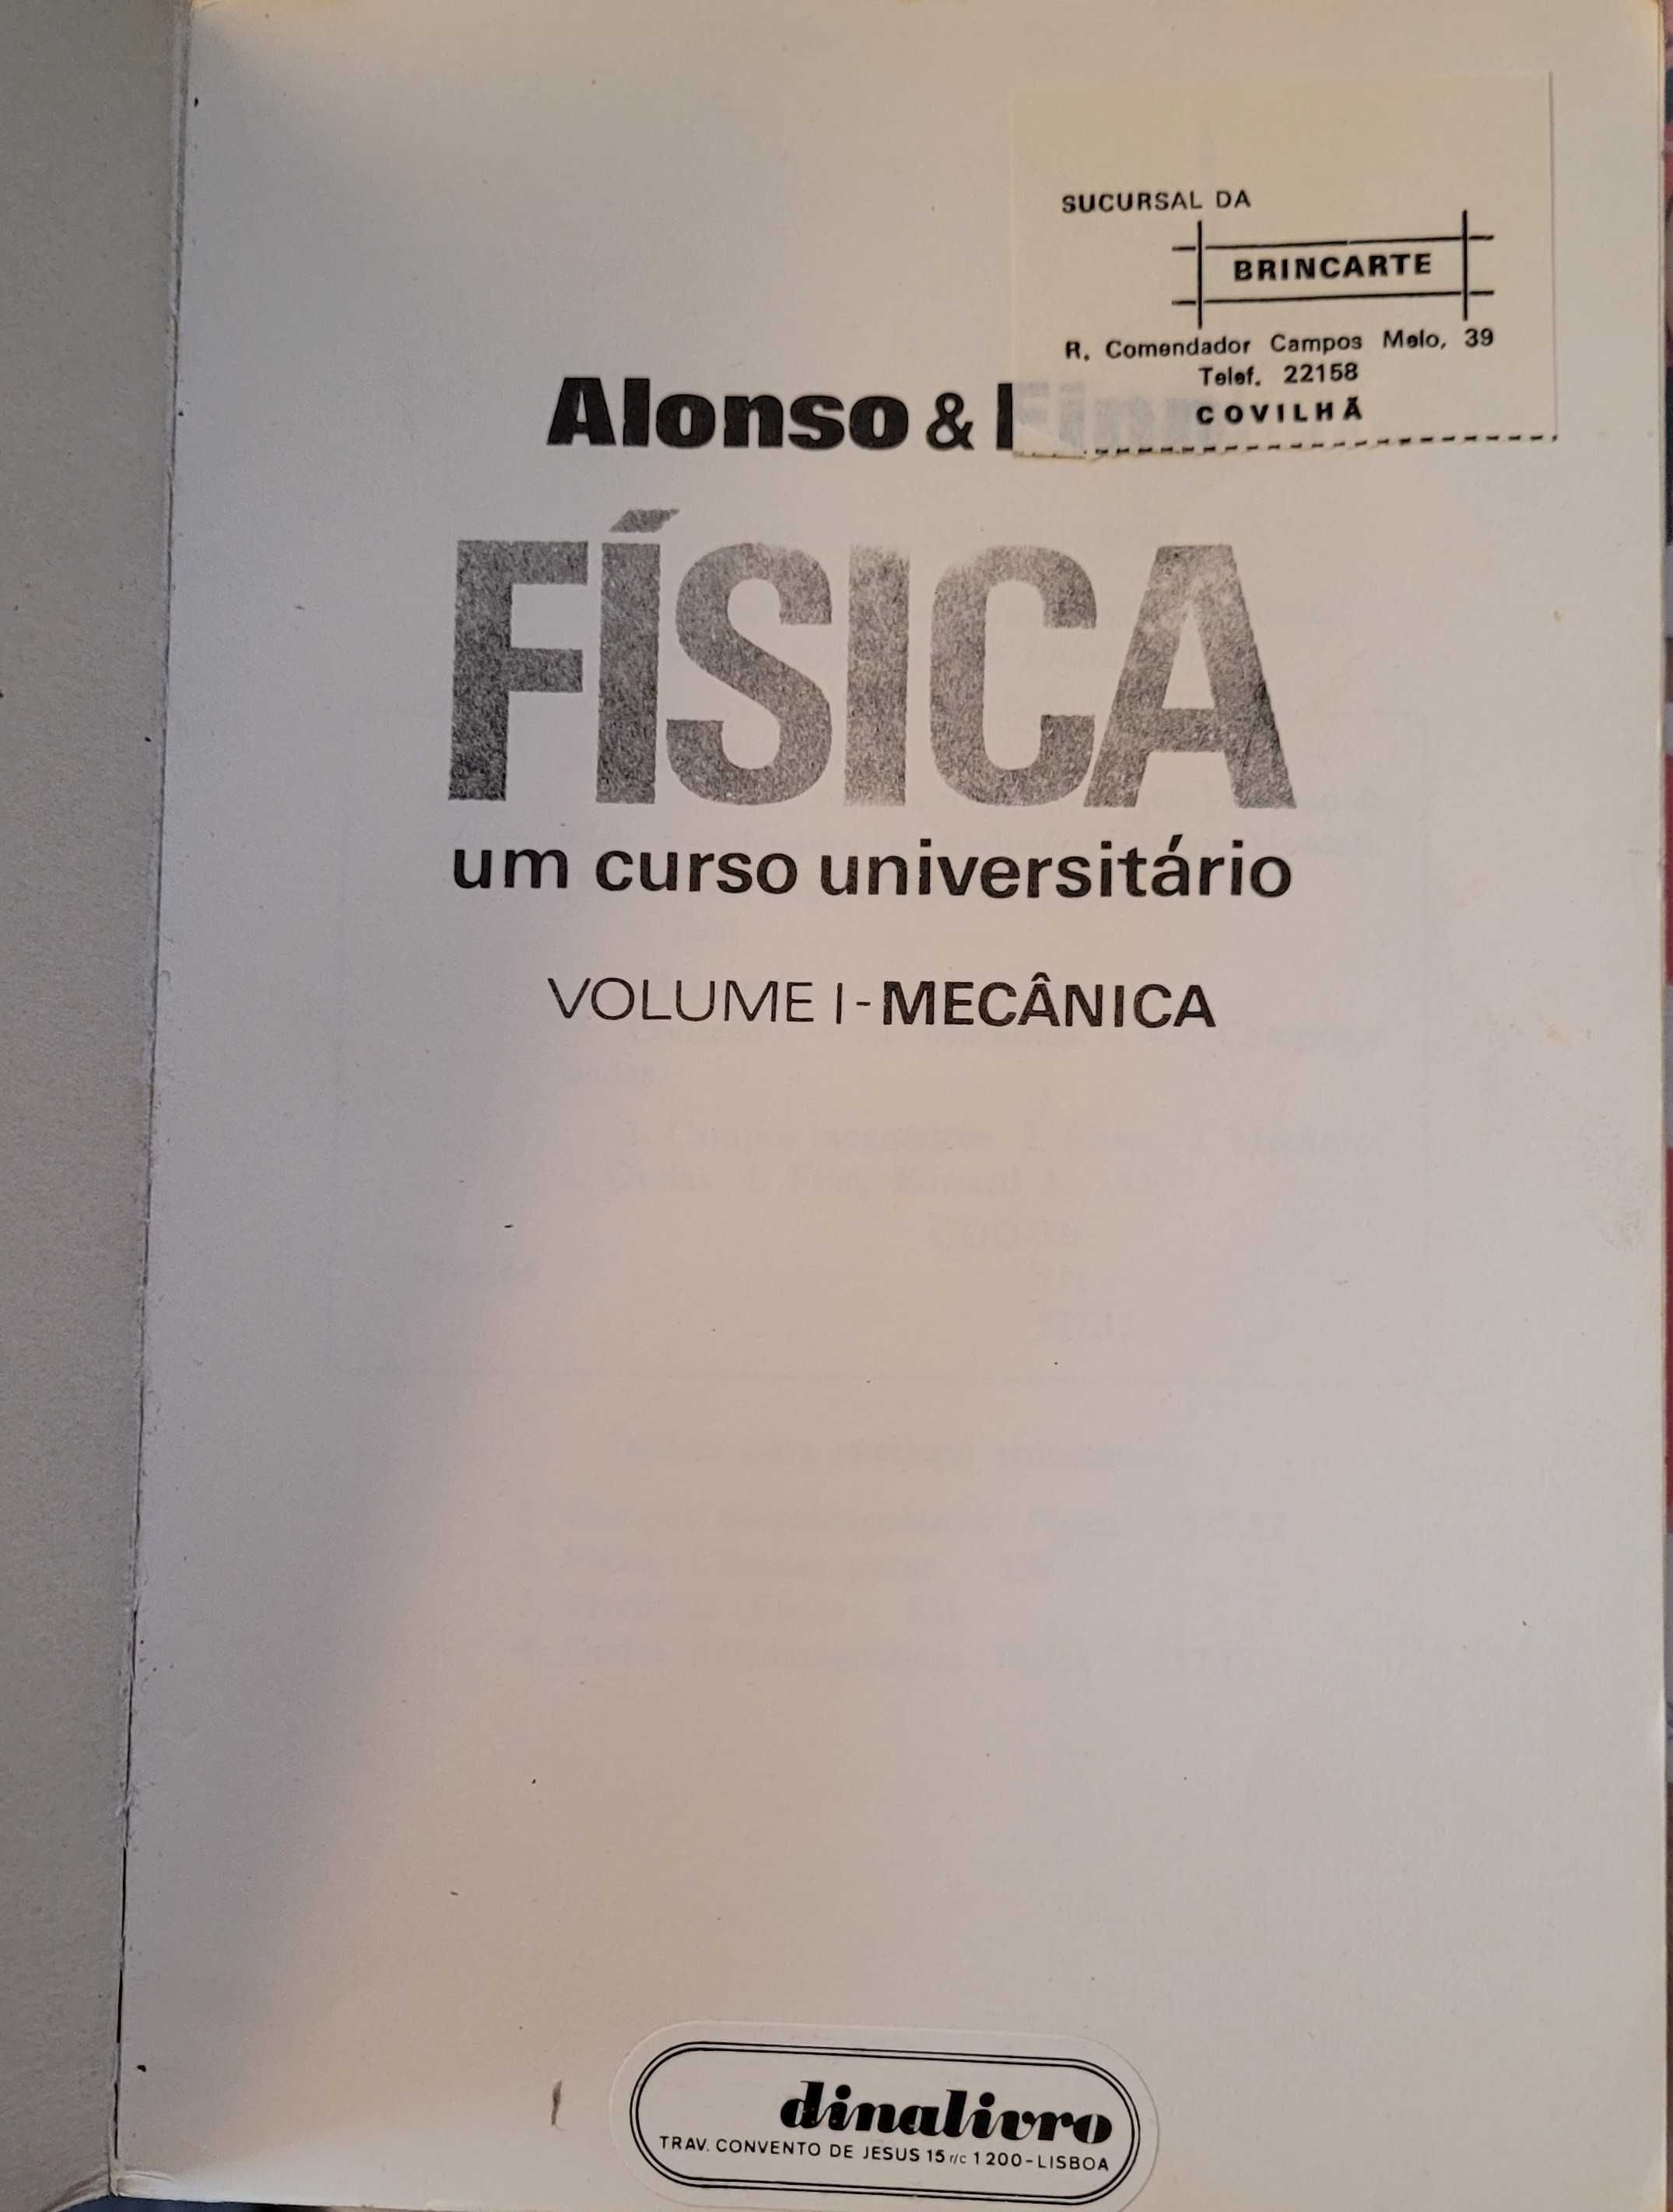 Livro "Física, um curso universitário I" Alonso & Finn